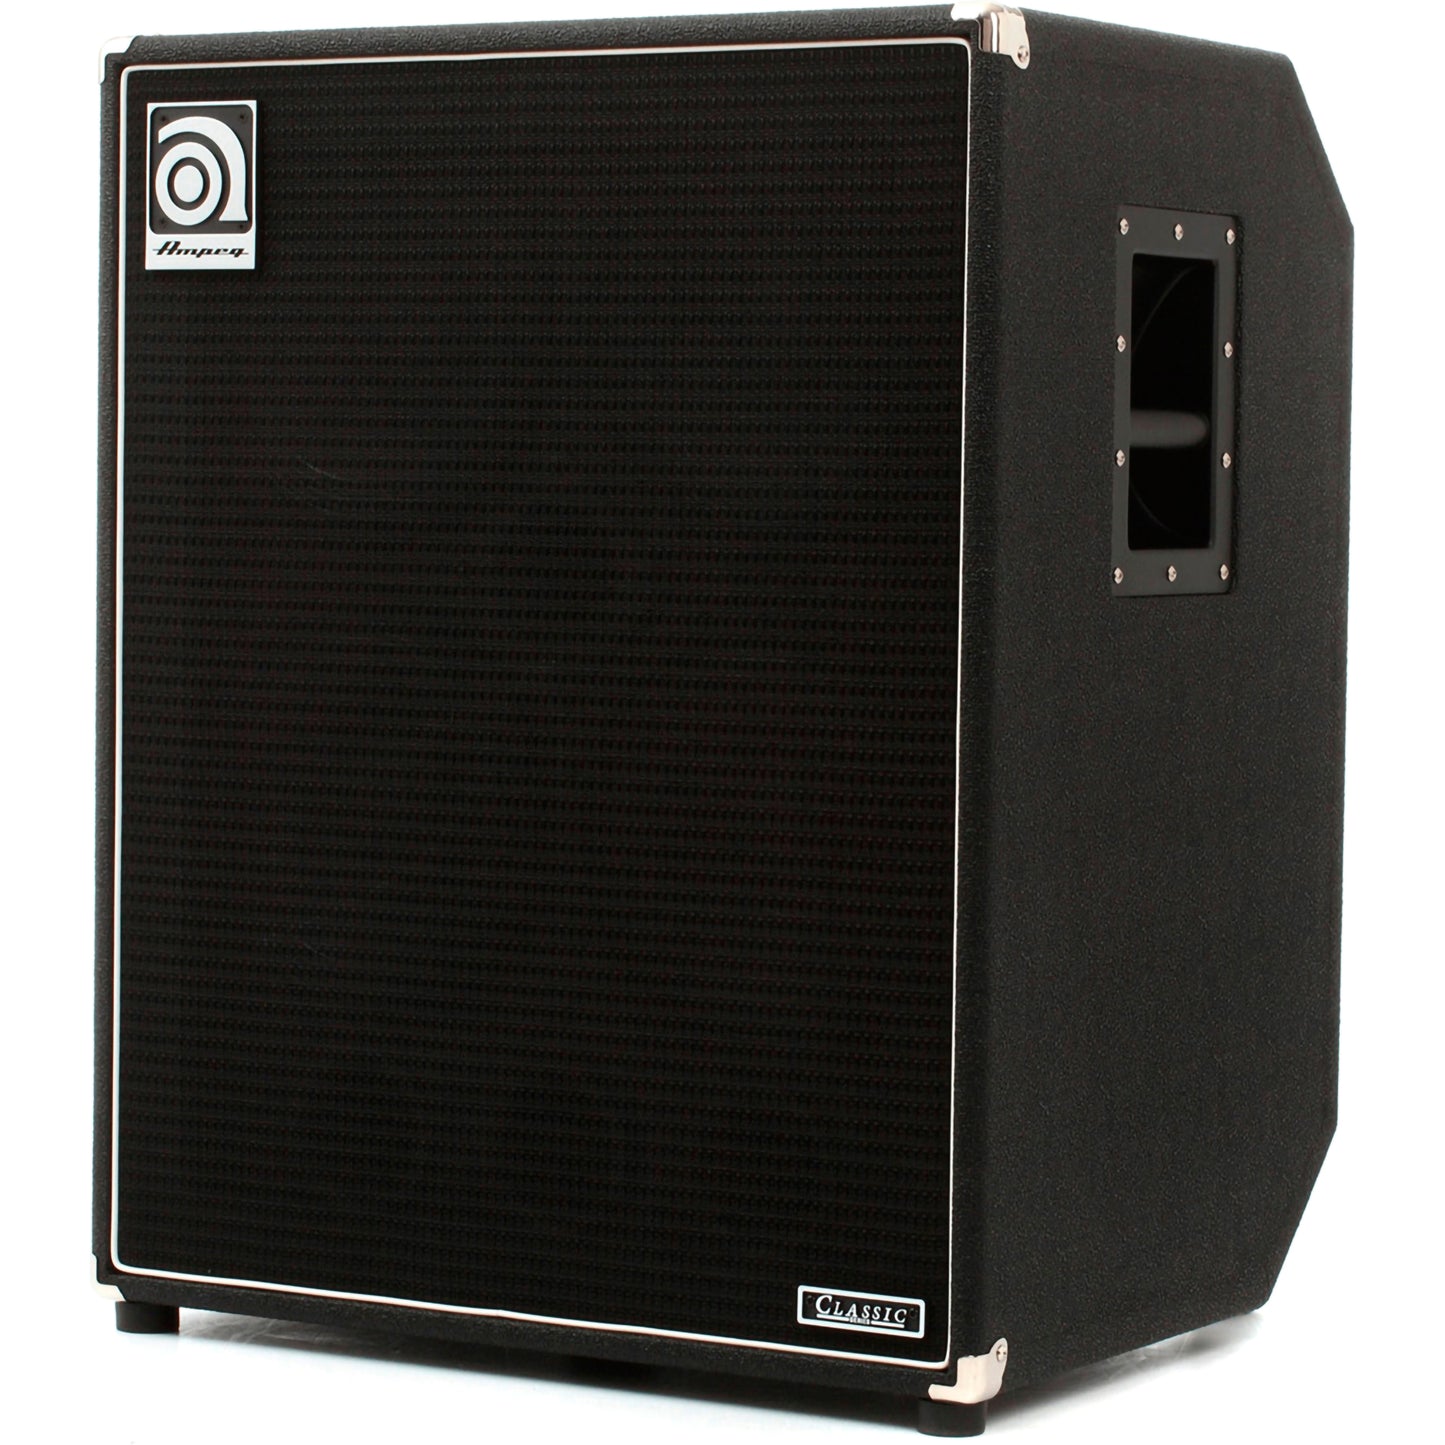 Ampeg SVT-410HLF 800-Watt 4x10 Bass Enclosure